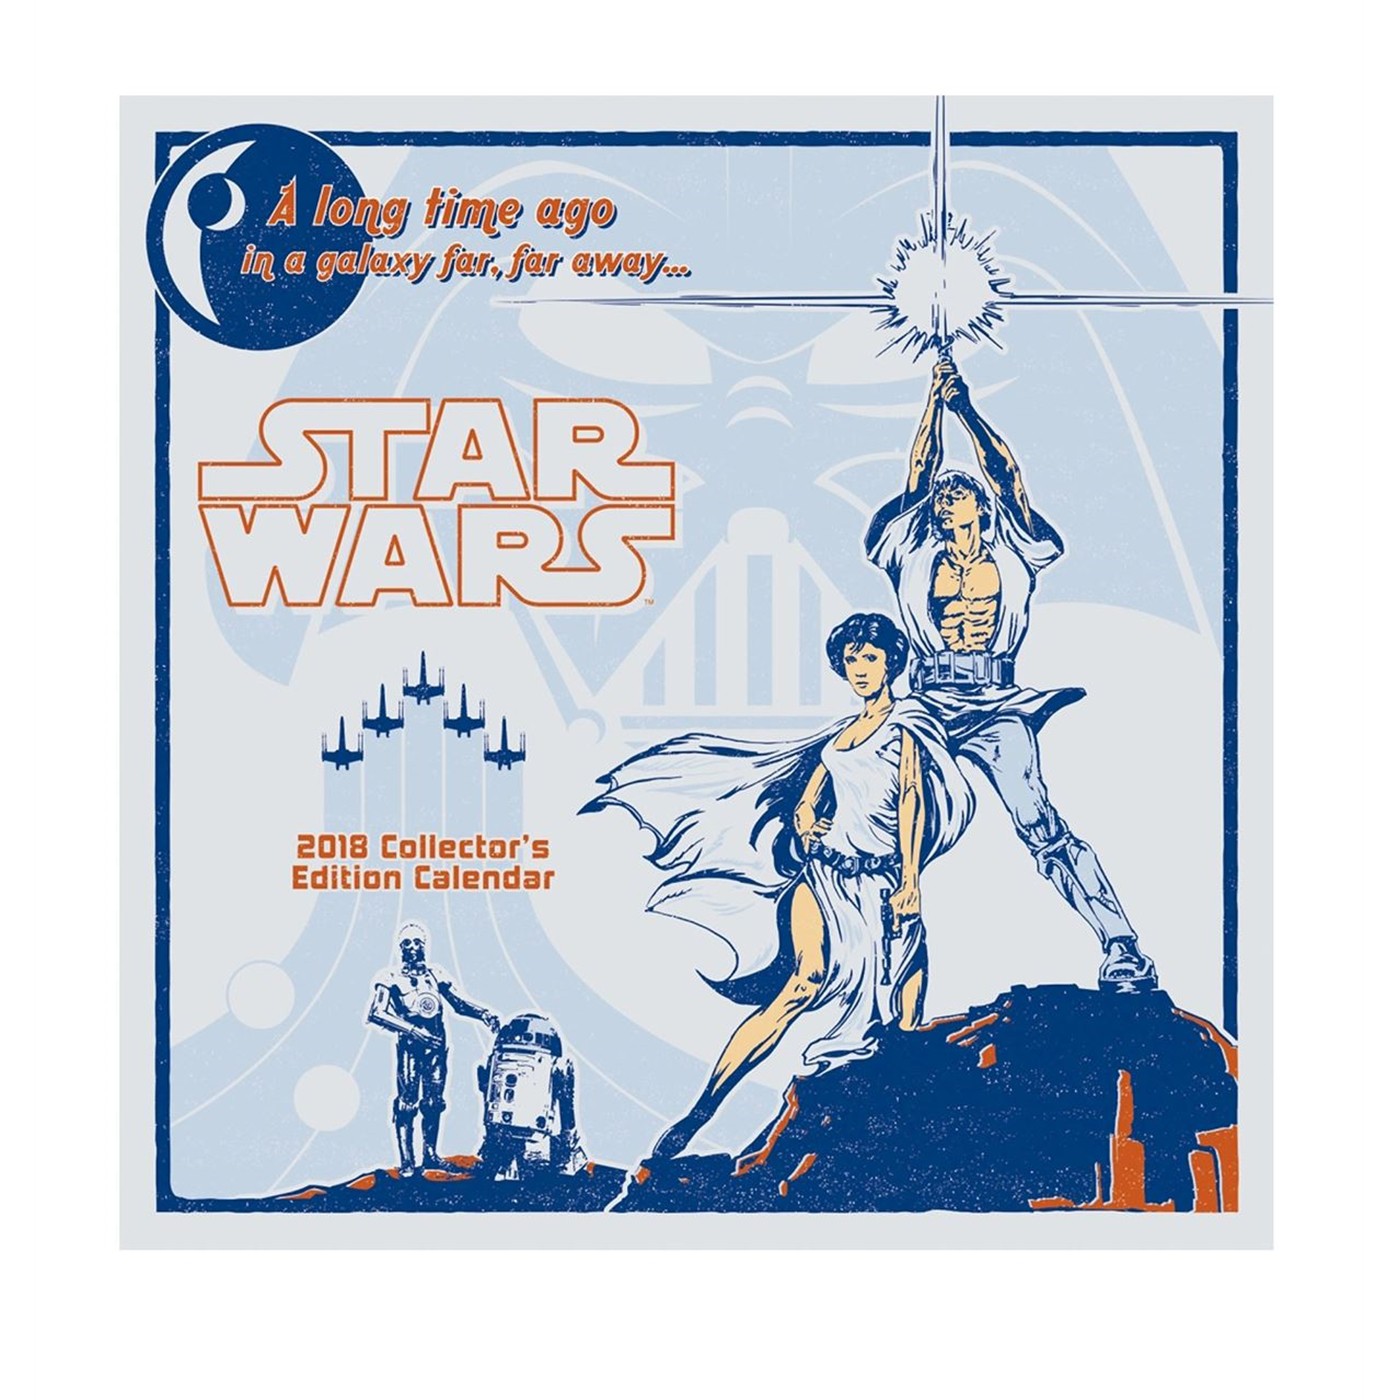 Star Wars Saga Collector's Edition 2018 Calendar